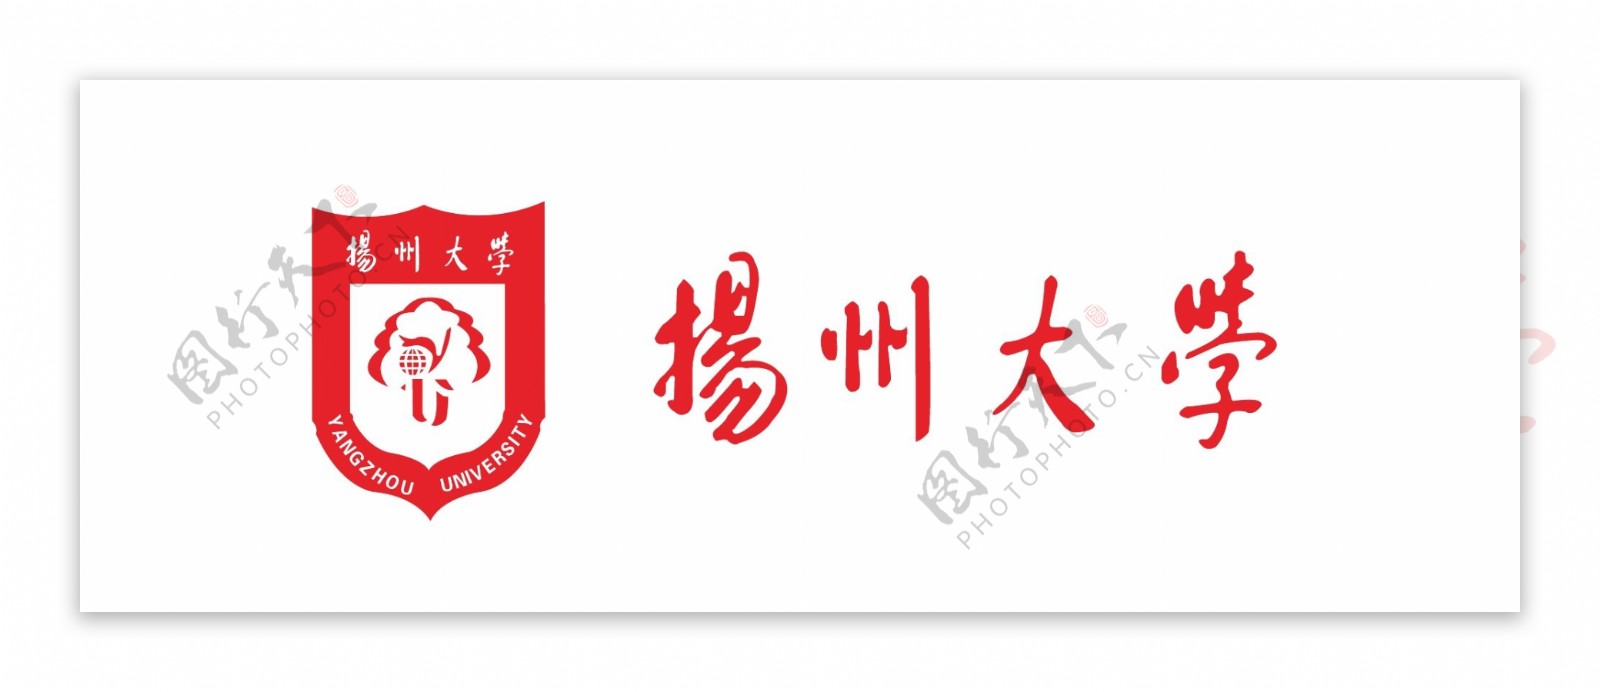 扬州大学logo图片